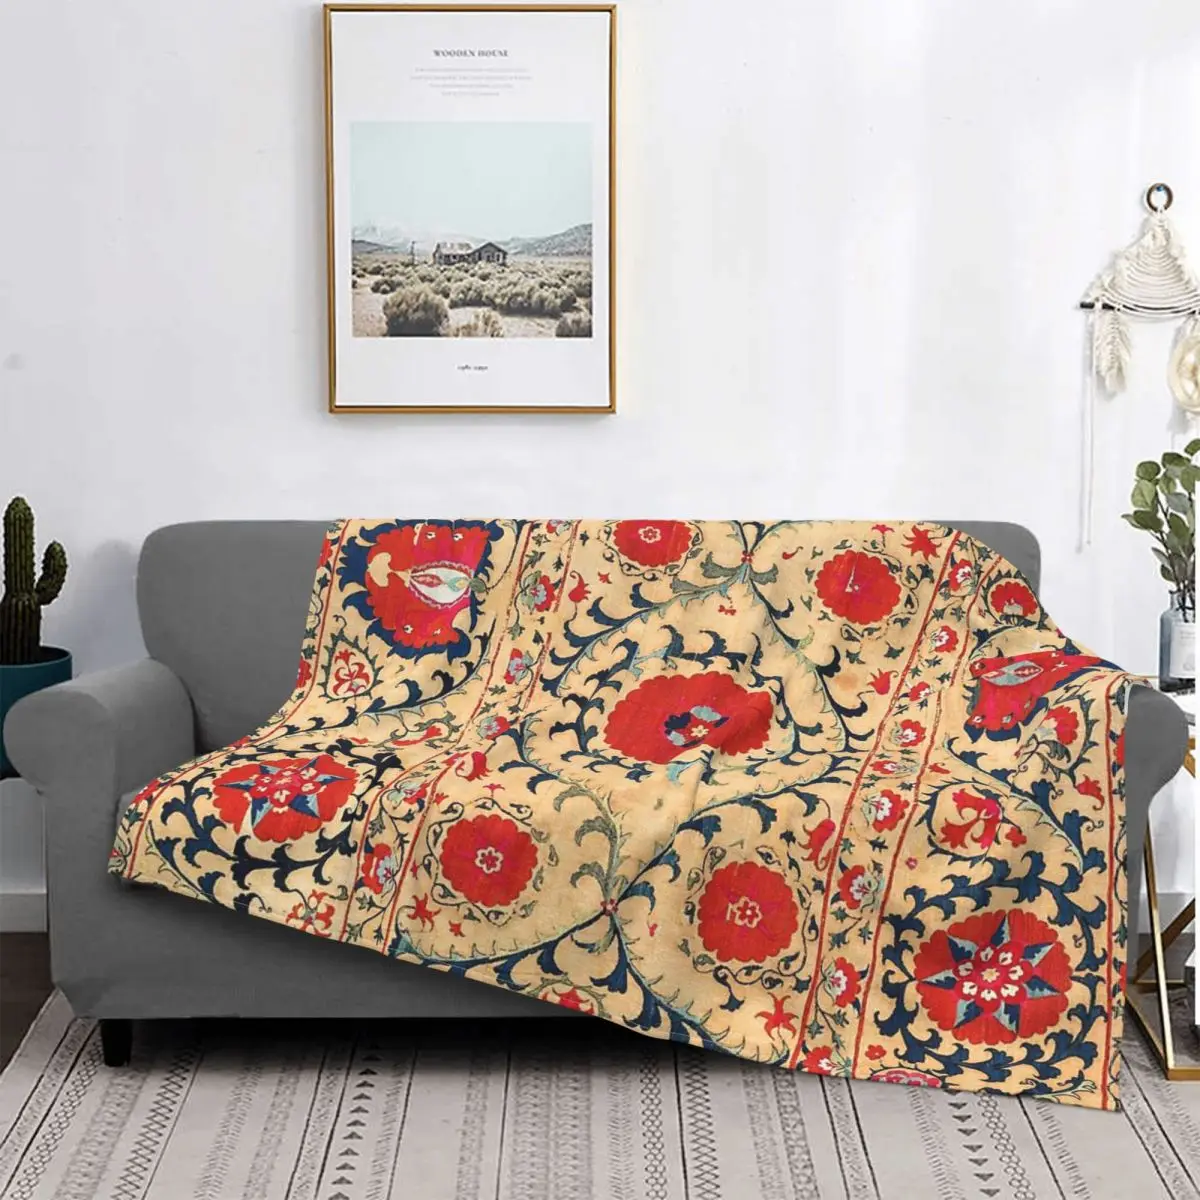 

Самарканд сузани бухарский Узбекистан Цветочная вышивка печать плед одеяло Брендовое полотенце Взвешивание меха утяжеленное одеяло